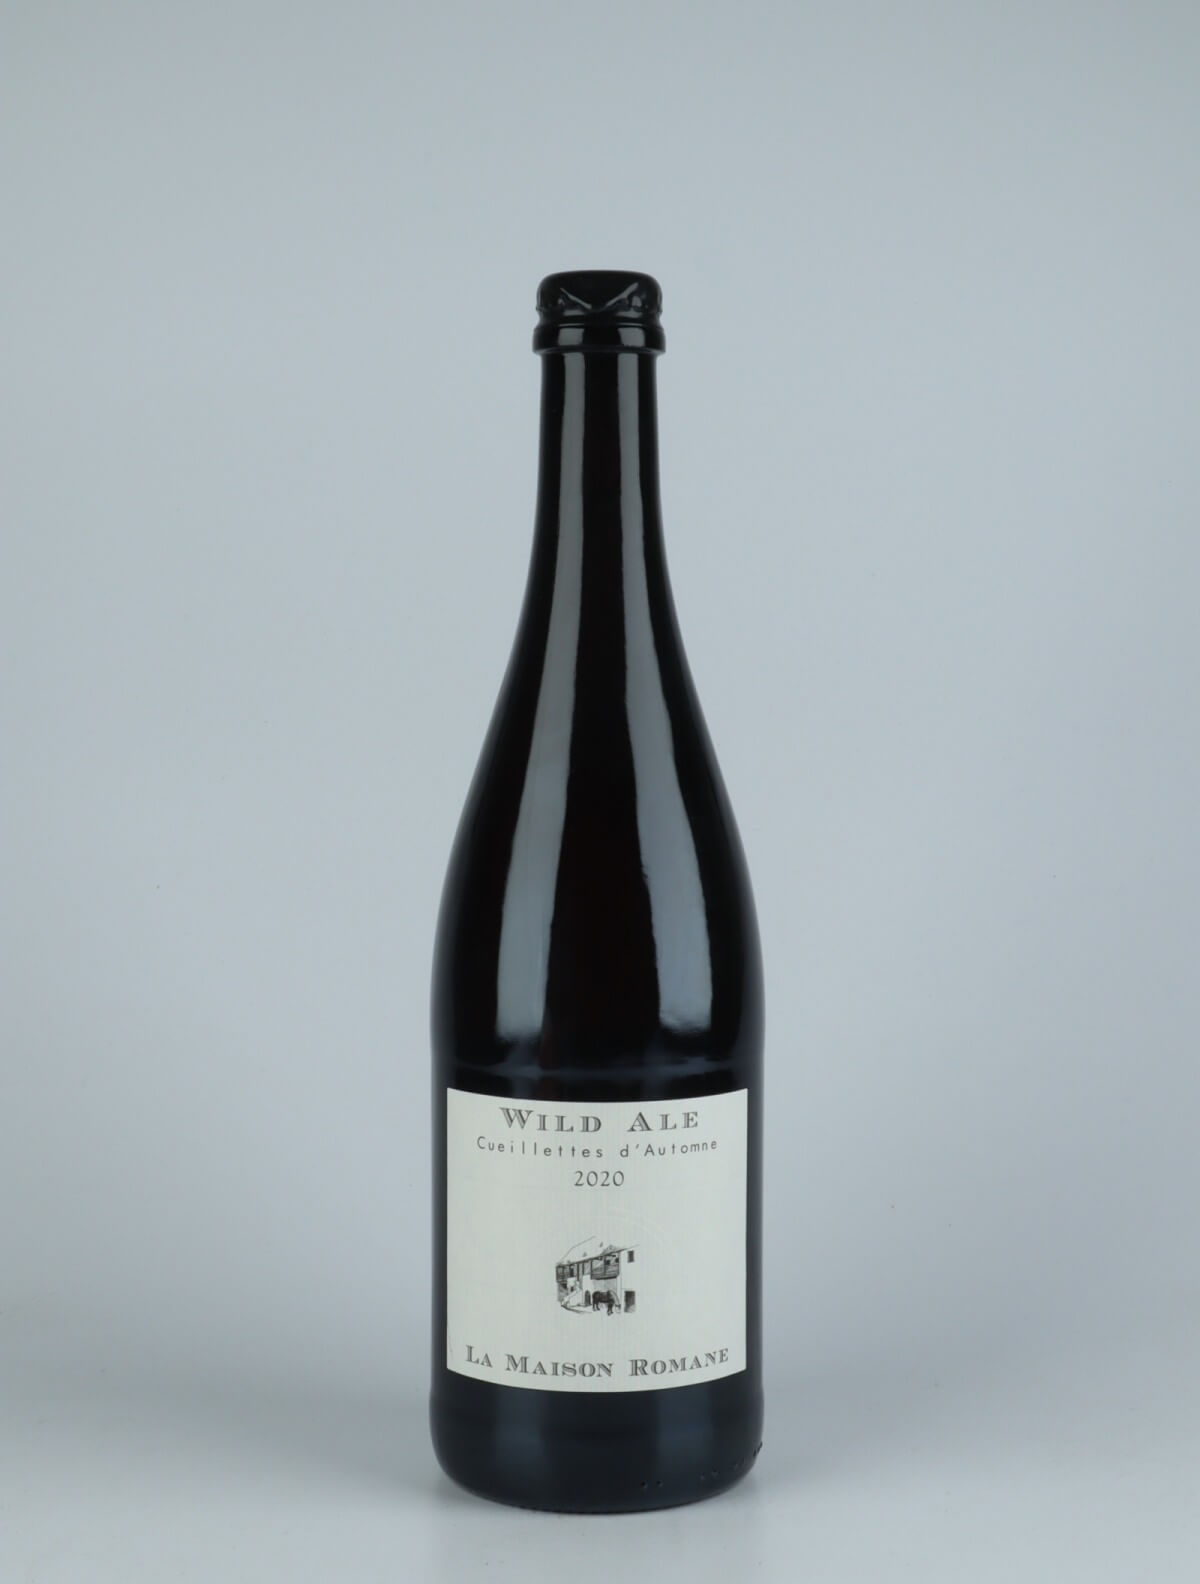 En flaske 2020 Bière Wild Ale - Cueillettes d'Automne Øl fra La Maison Romane, Bourgogne i Frankrig